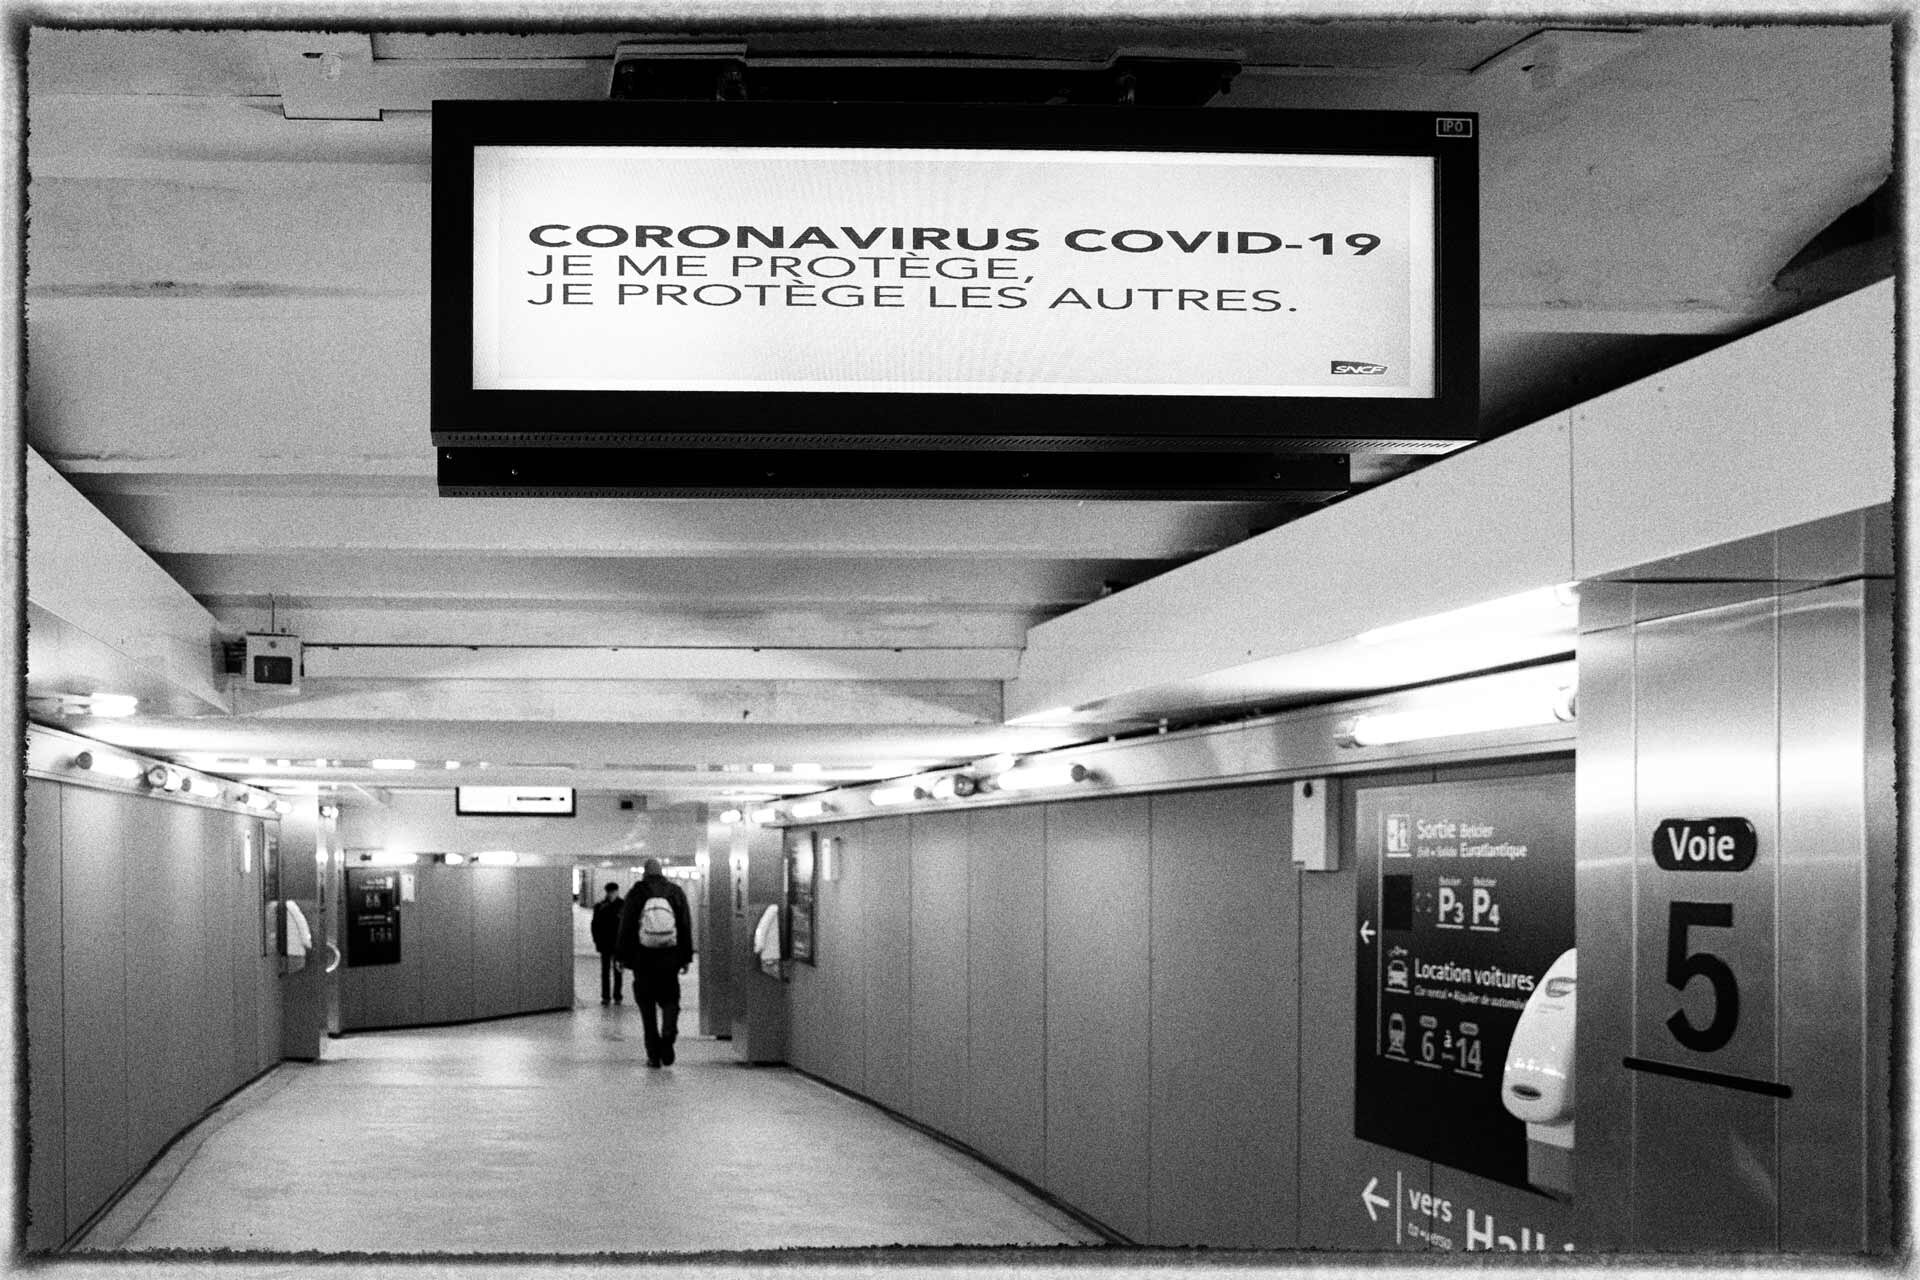 Dans la gare, un panneau diffuse "Coronavirus Covid-19, je me protège, je protège les autres."